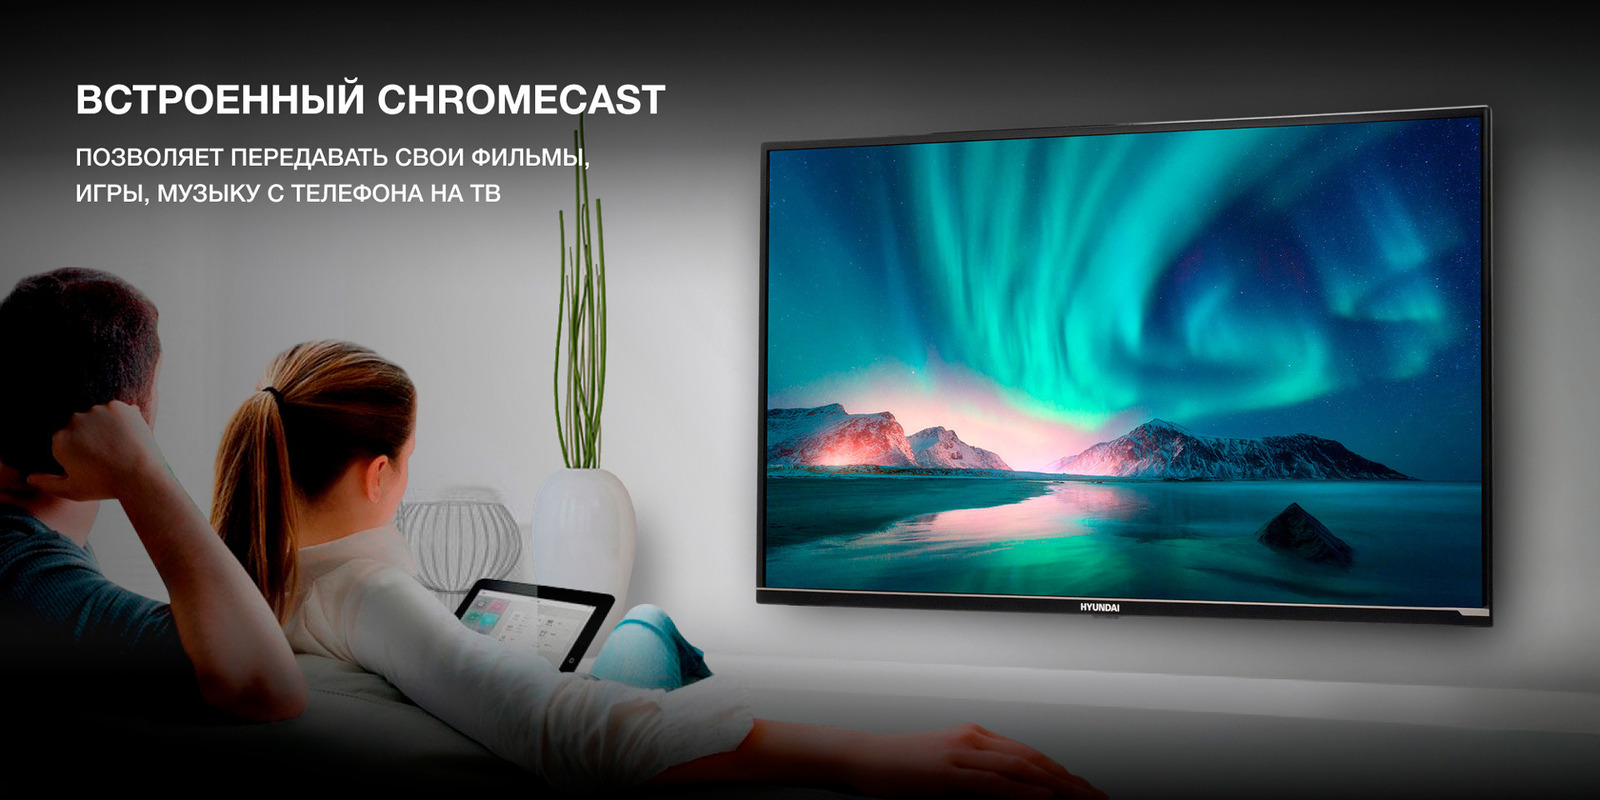 Встроенный Chromecast позволяет передавать файлы непосредственно на ТВ.